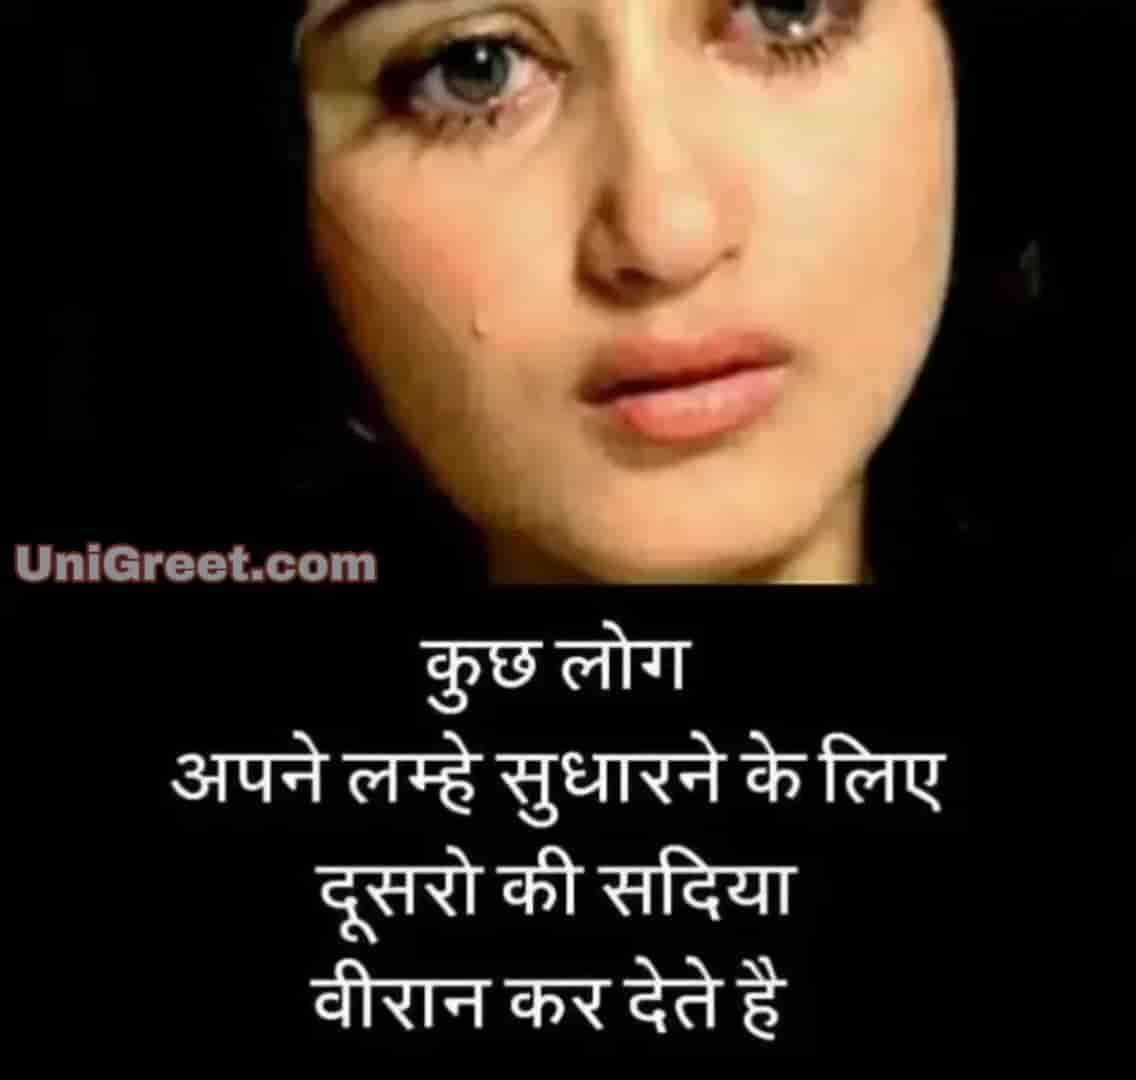 60 Very Sad Images Hindi Shayari Of Feeling Sad Pics For Whatsapp Dp